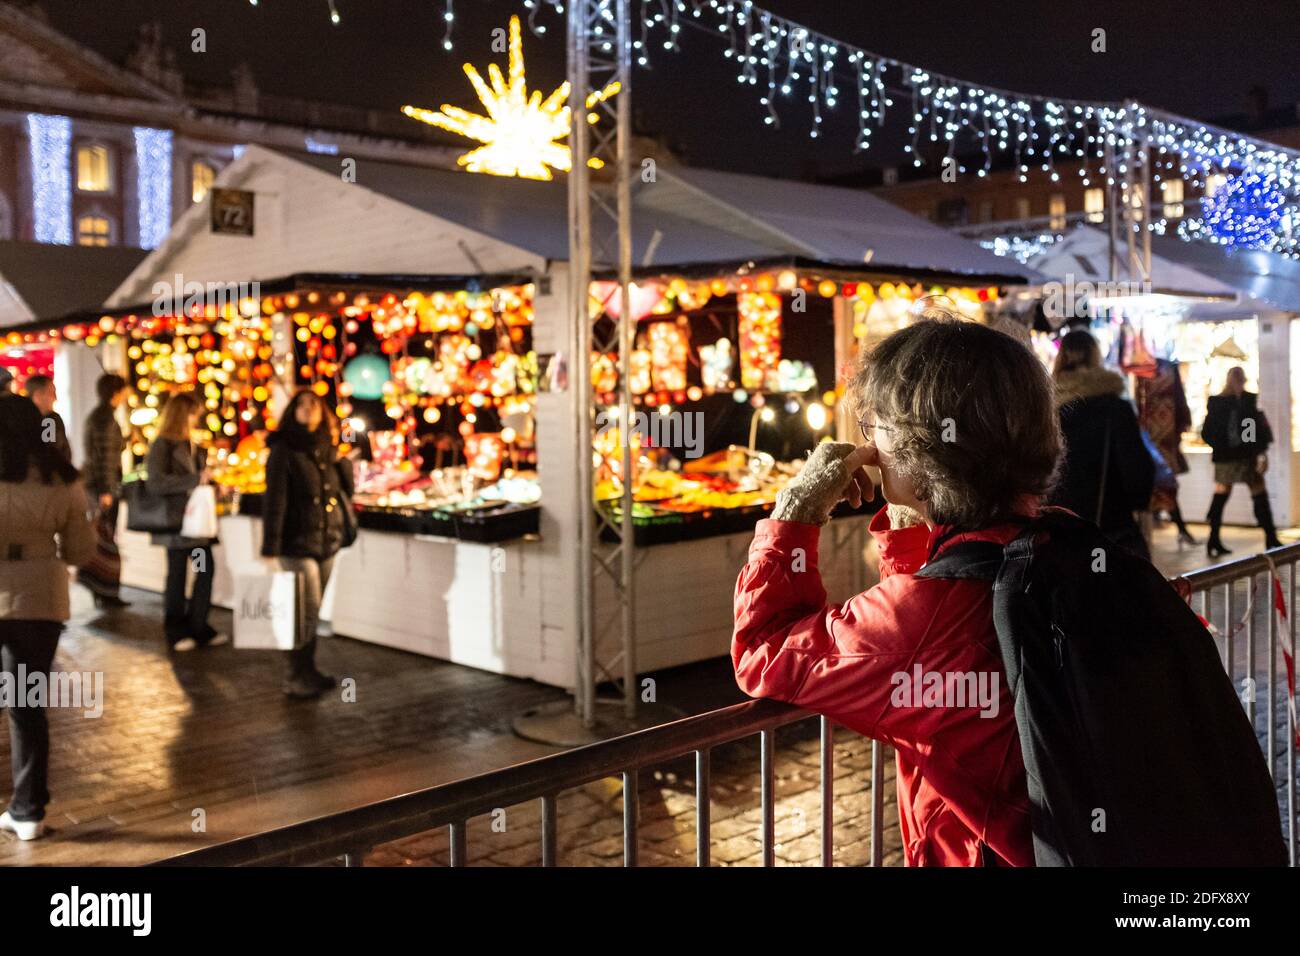 A la fin de l'année, le marché traditionnel de Noël de Toulouse (France) est situé sur la place du Capitole. Après l'attaque terroriste à Strasbourg, le système de sécurité est renforcé : perquisitions de sacs à l'entrée, blocs anti-intrusion de véhicules, patrouilles de l'armée (dispositif de Vigipirate) et officiers de police. Photo de Patrick Batard/ABACAPRESS.COM Banque D'Images